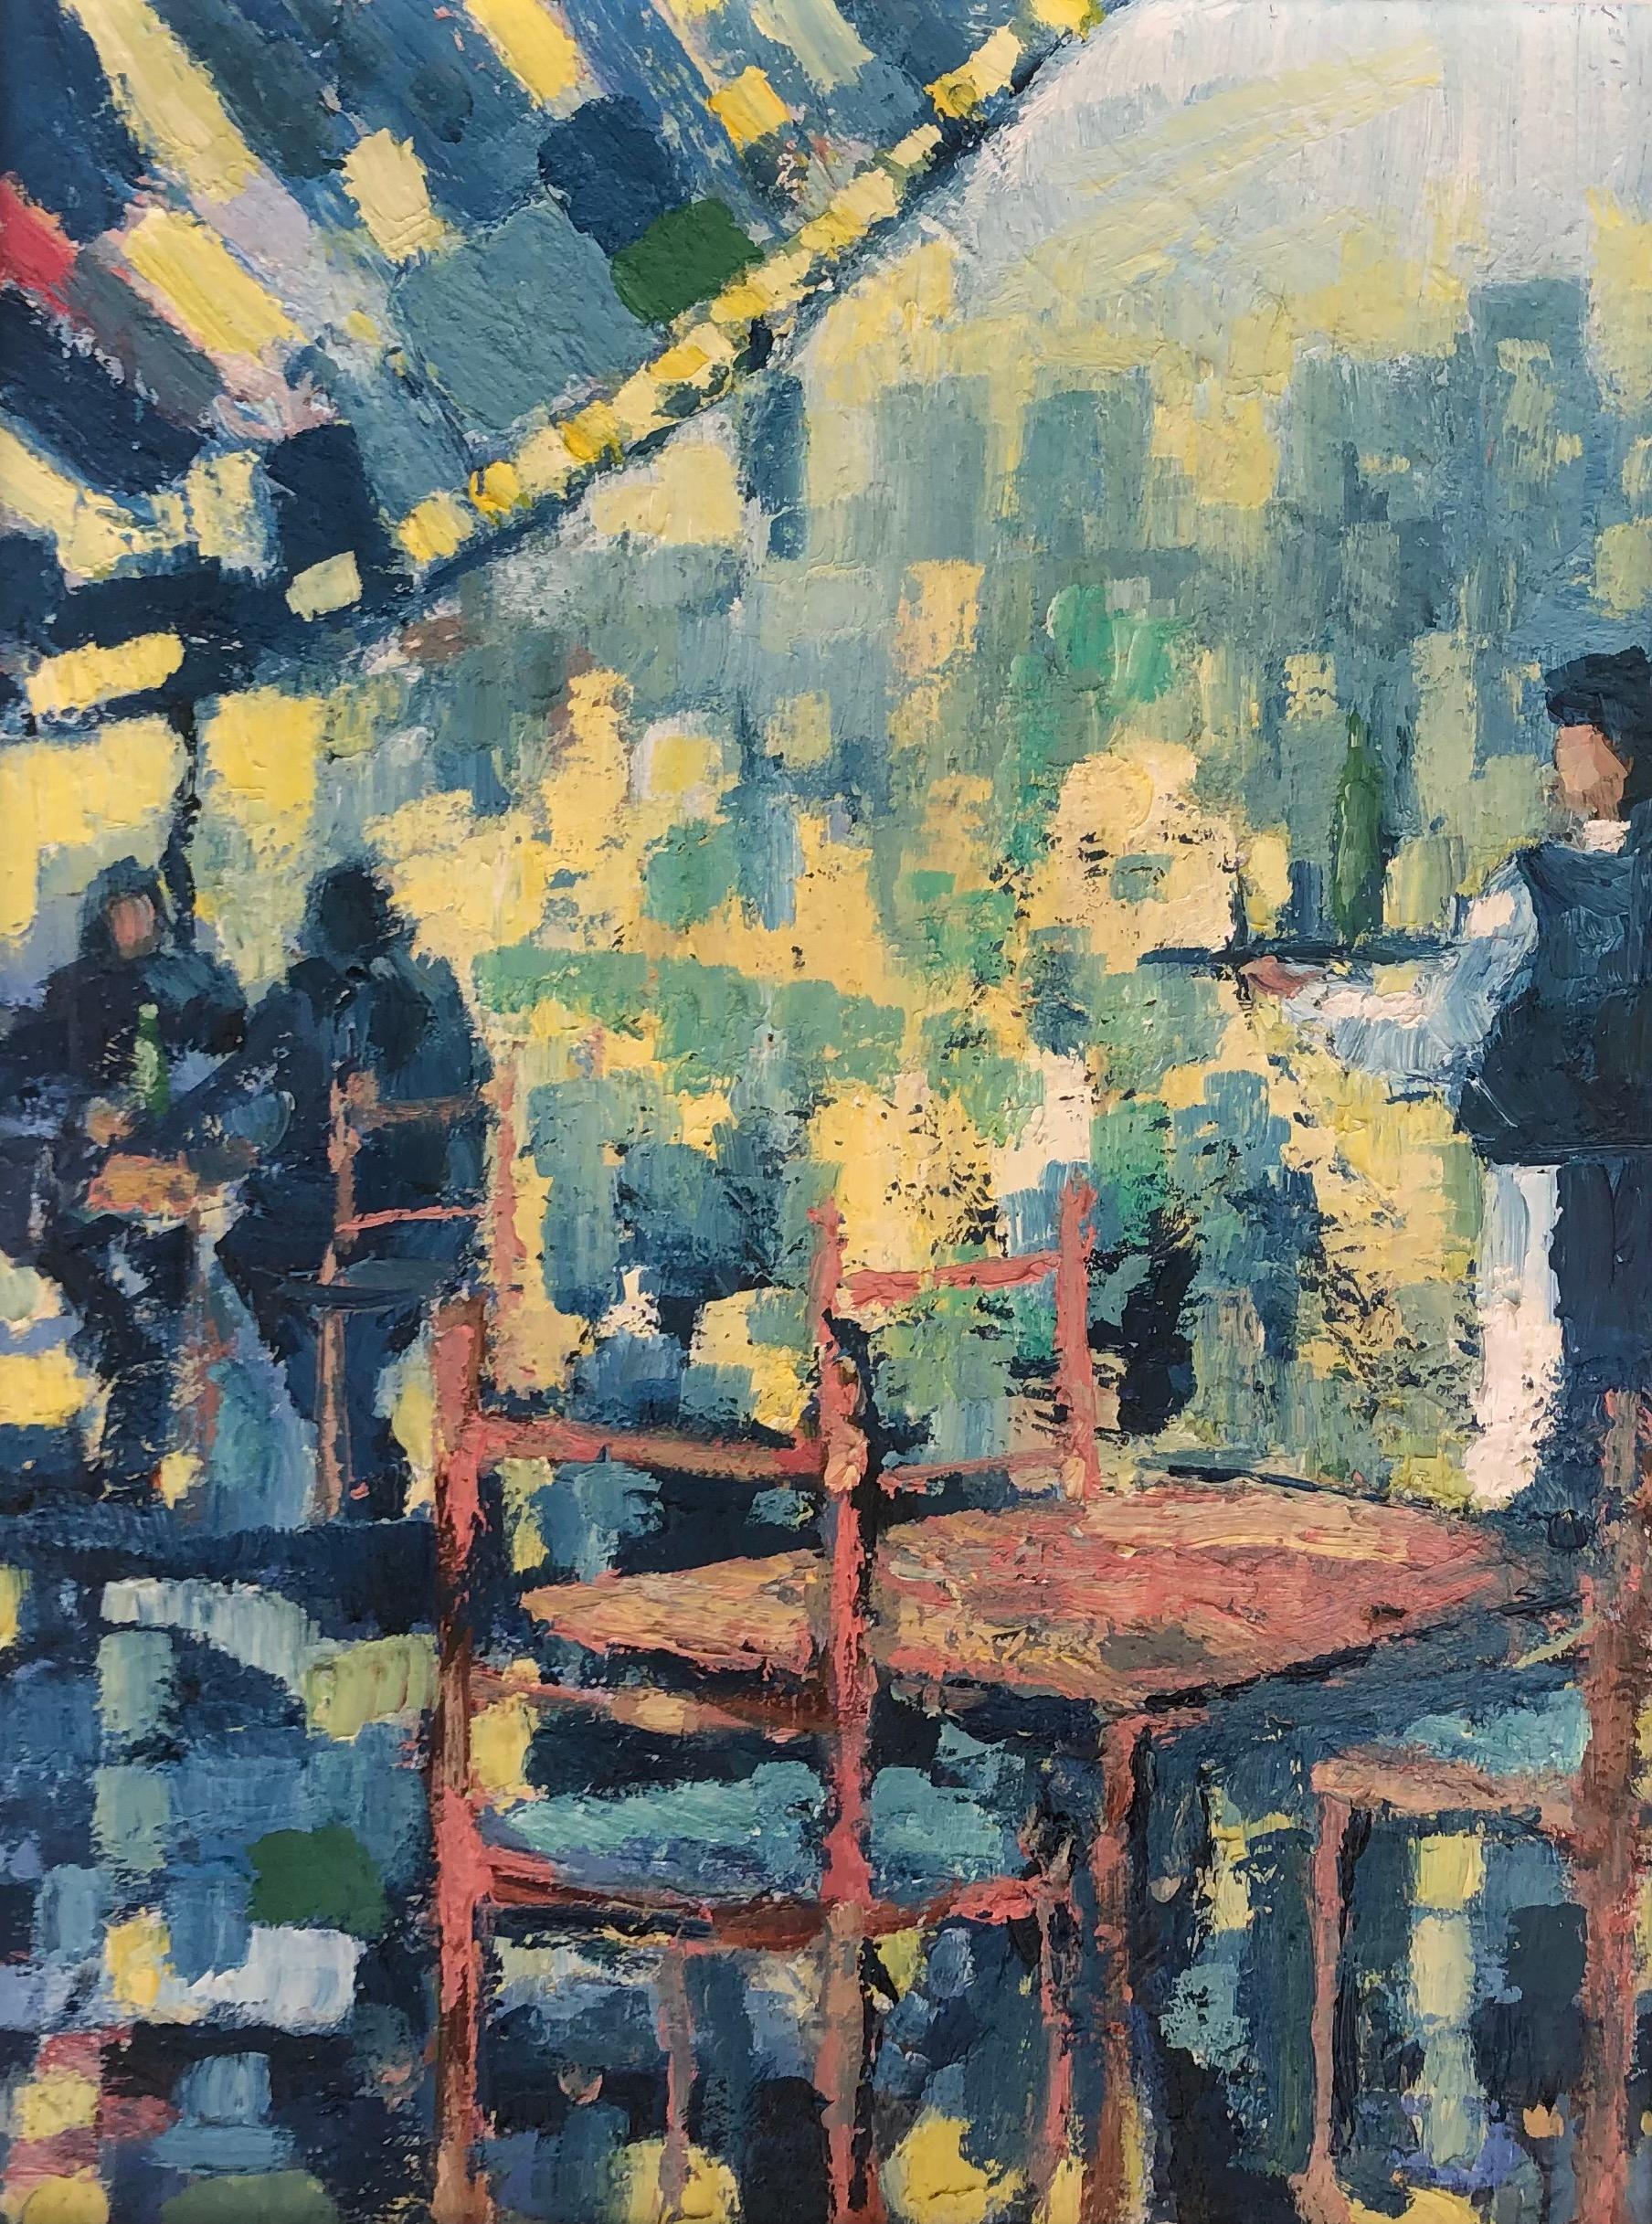 Cafe Society-originale impressionistische figurative Stadtbildmalerei-zeitgenössisch